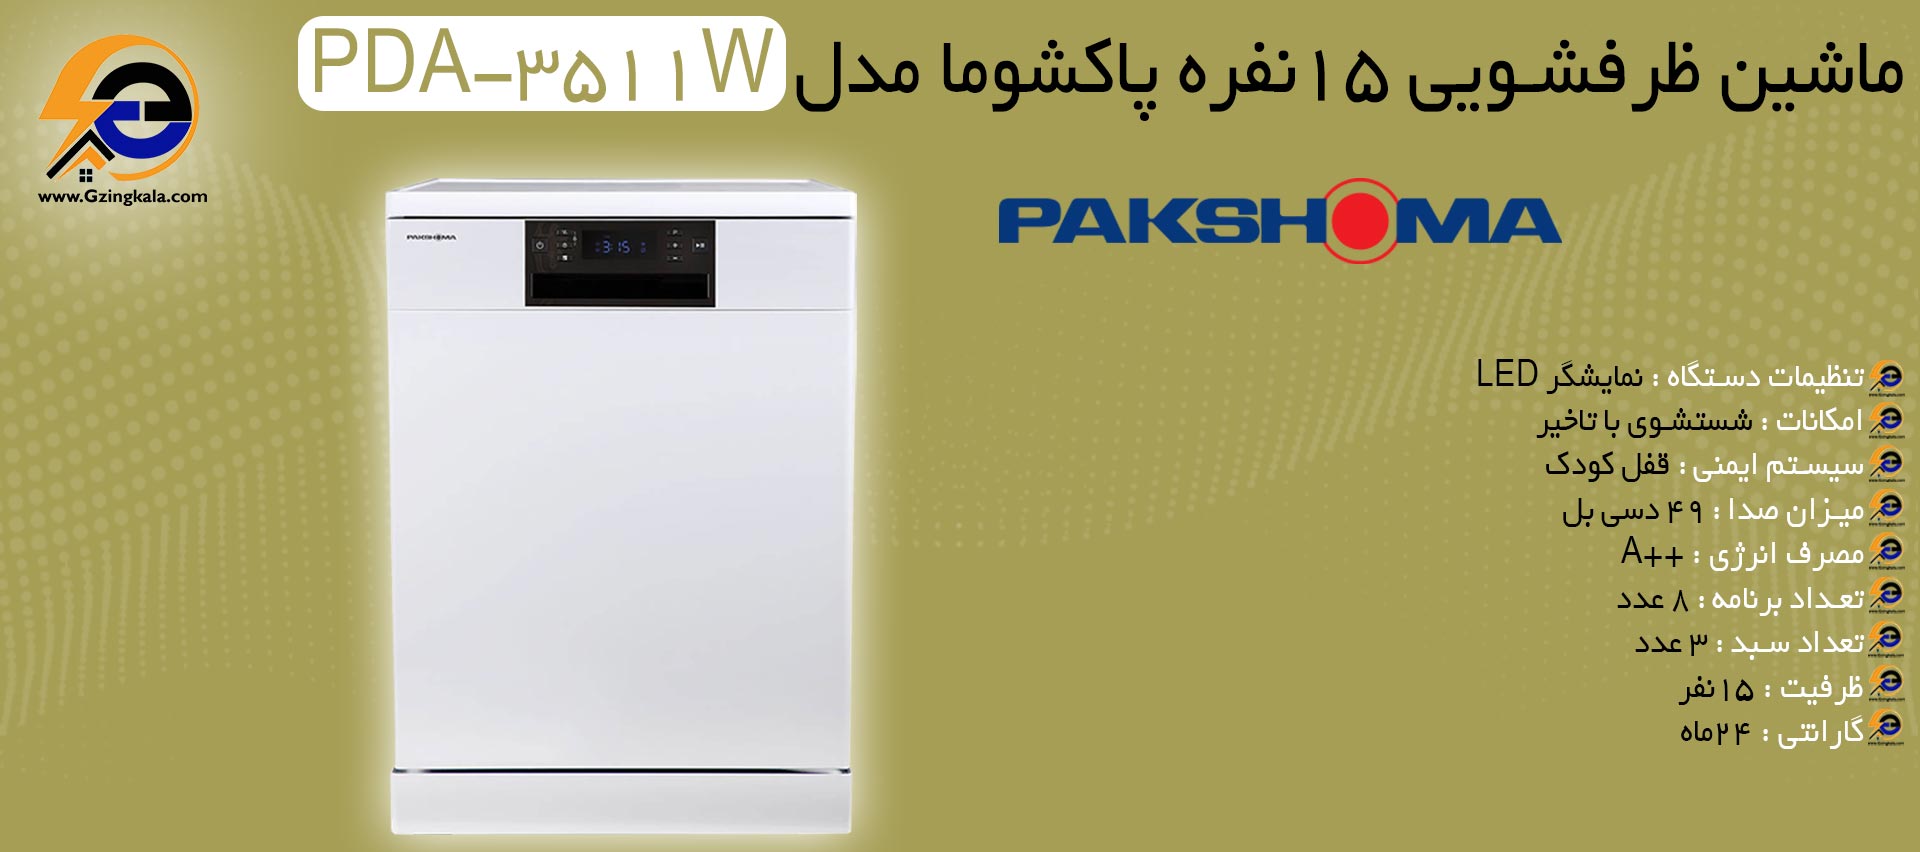 ماشین ظرفشویی 15نفره پاکشوما مدل PDA-3511W